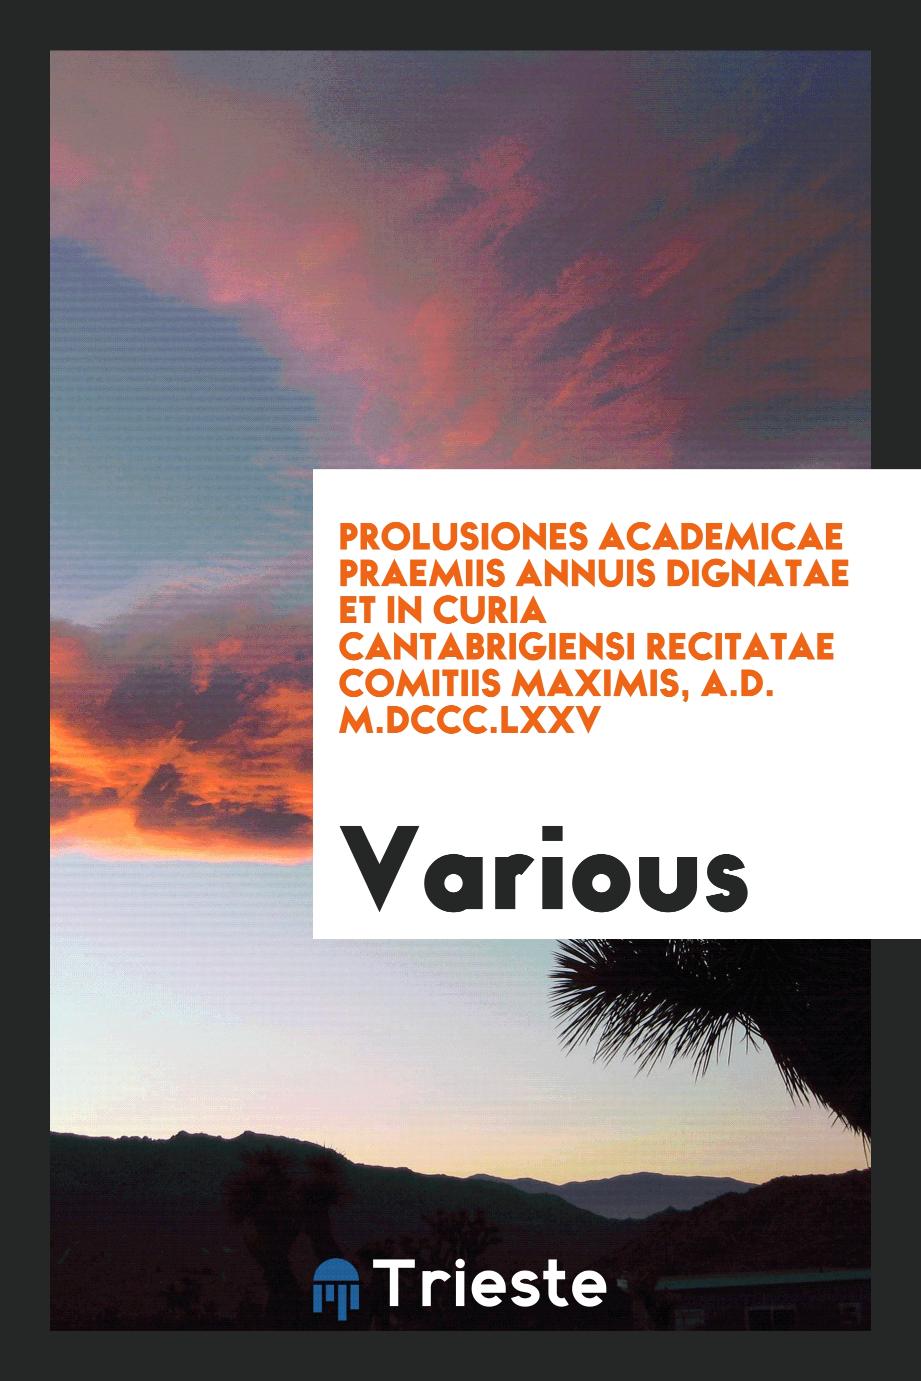 Prolusiones academicae praemiis annuis dignatae et in curia Cantabrigiensi recitatae comitiis maximis, A.D. M.DCCC.LXXV